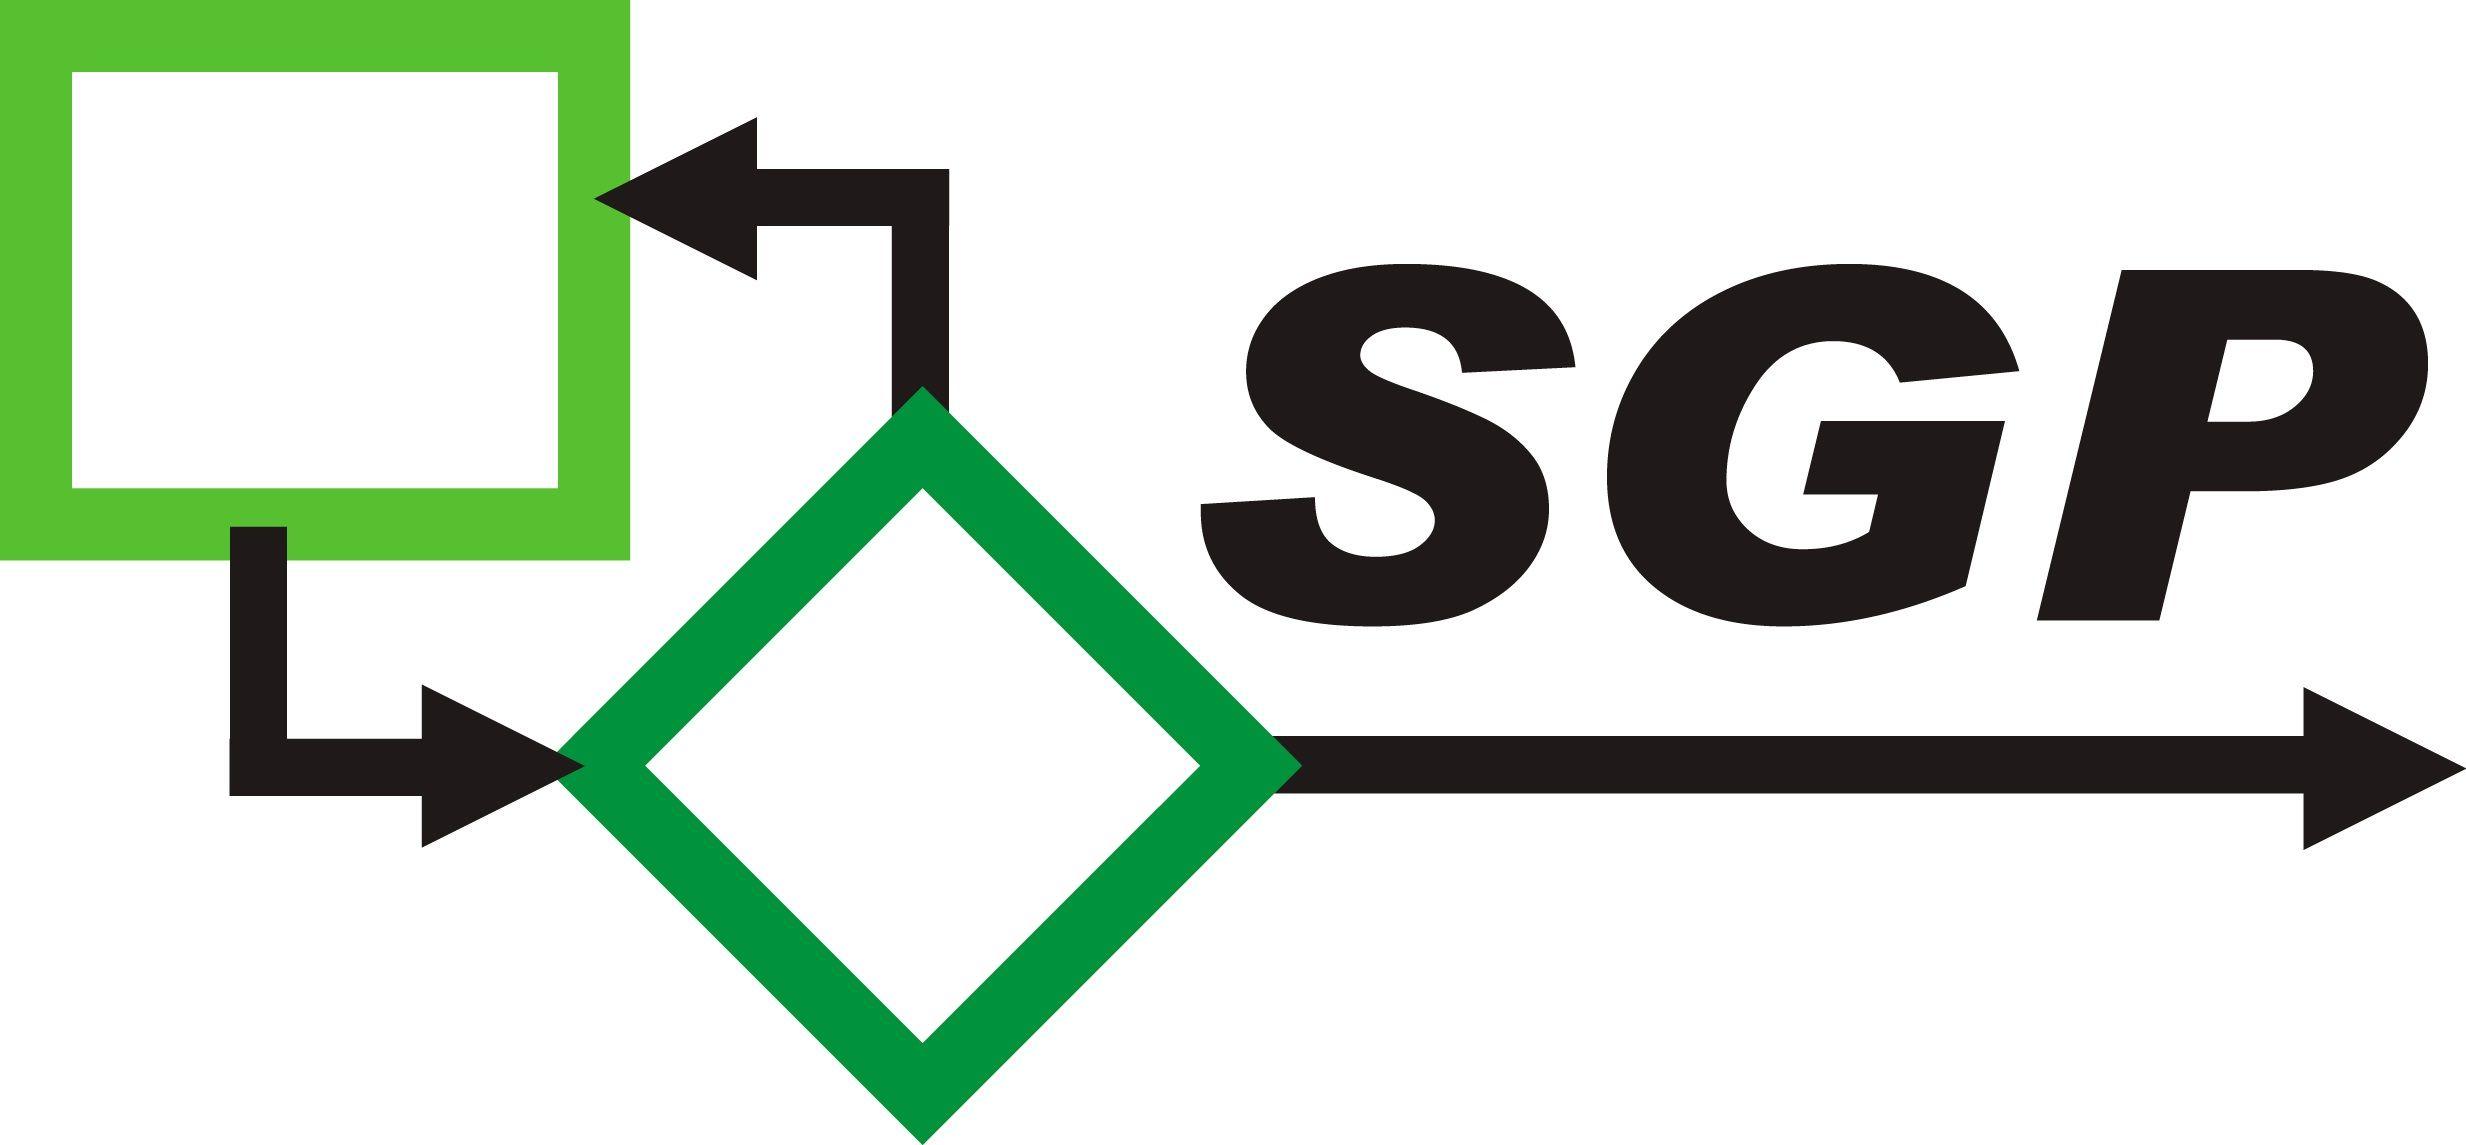 Sgp logo letter design Royalty Free Vector Image